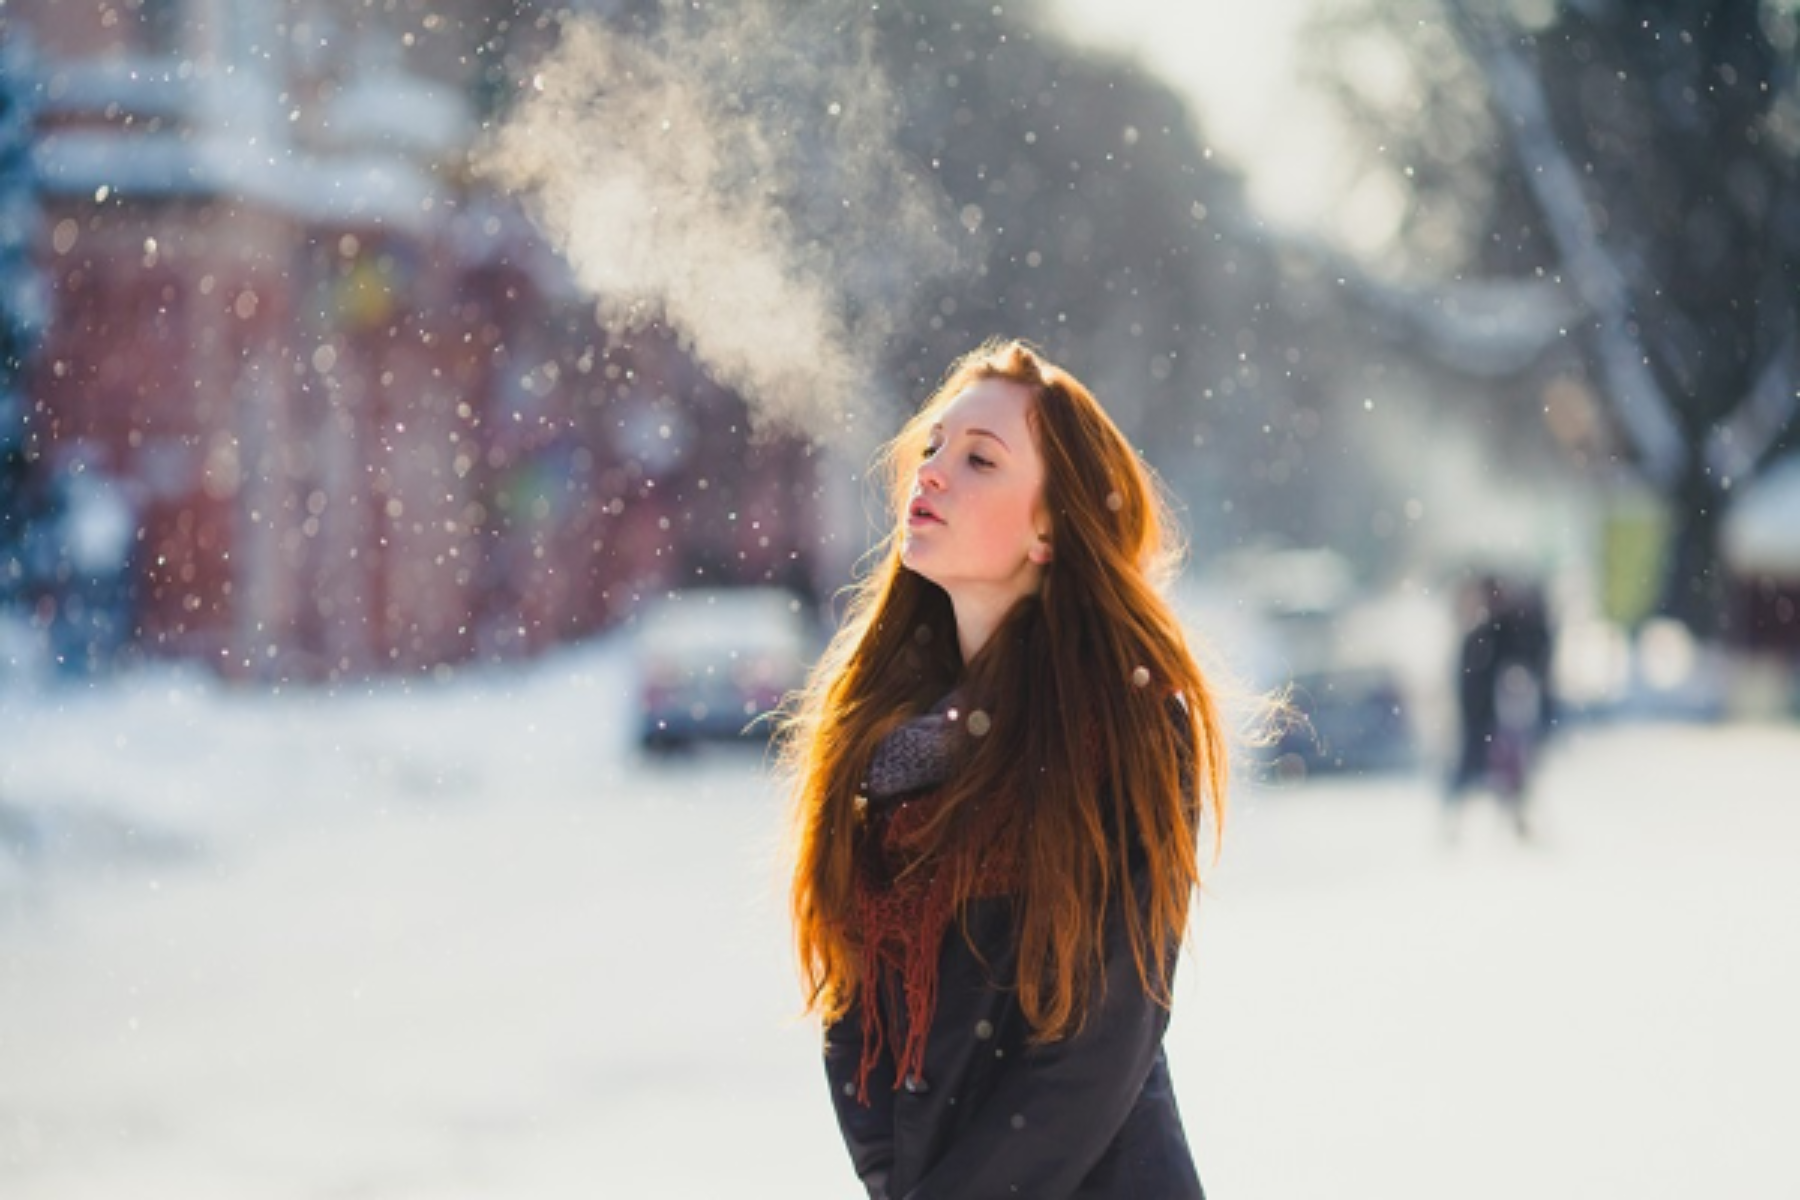 Αναπνευστικά χειμώνας: Συμβουλές για να αναπνέετε εύκολα και να κρατάτε μακριά τα αναπνευστικά προβλήματα το χειμώνα